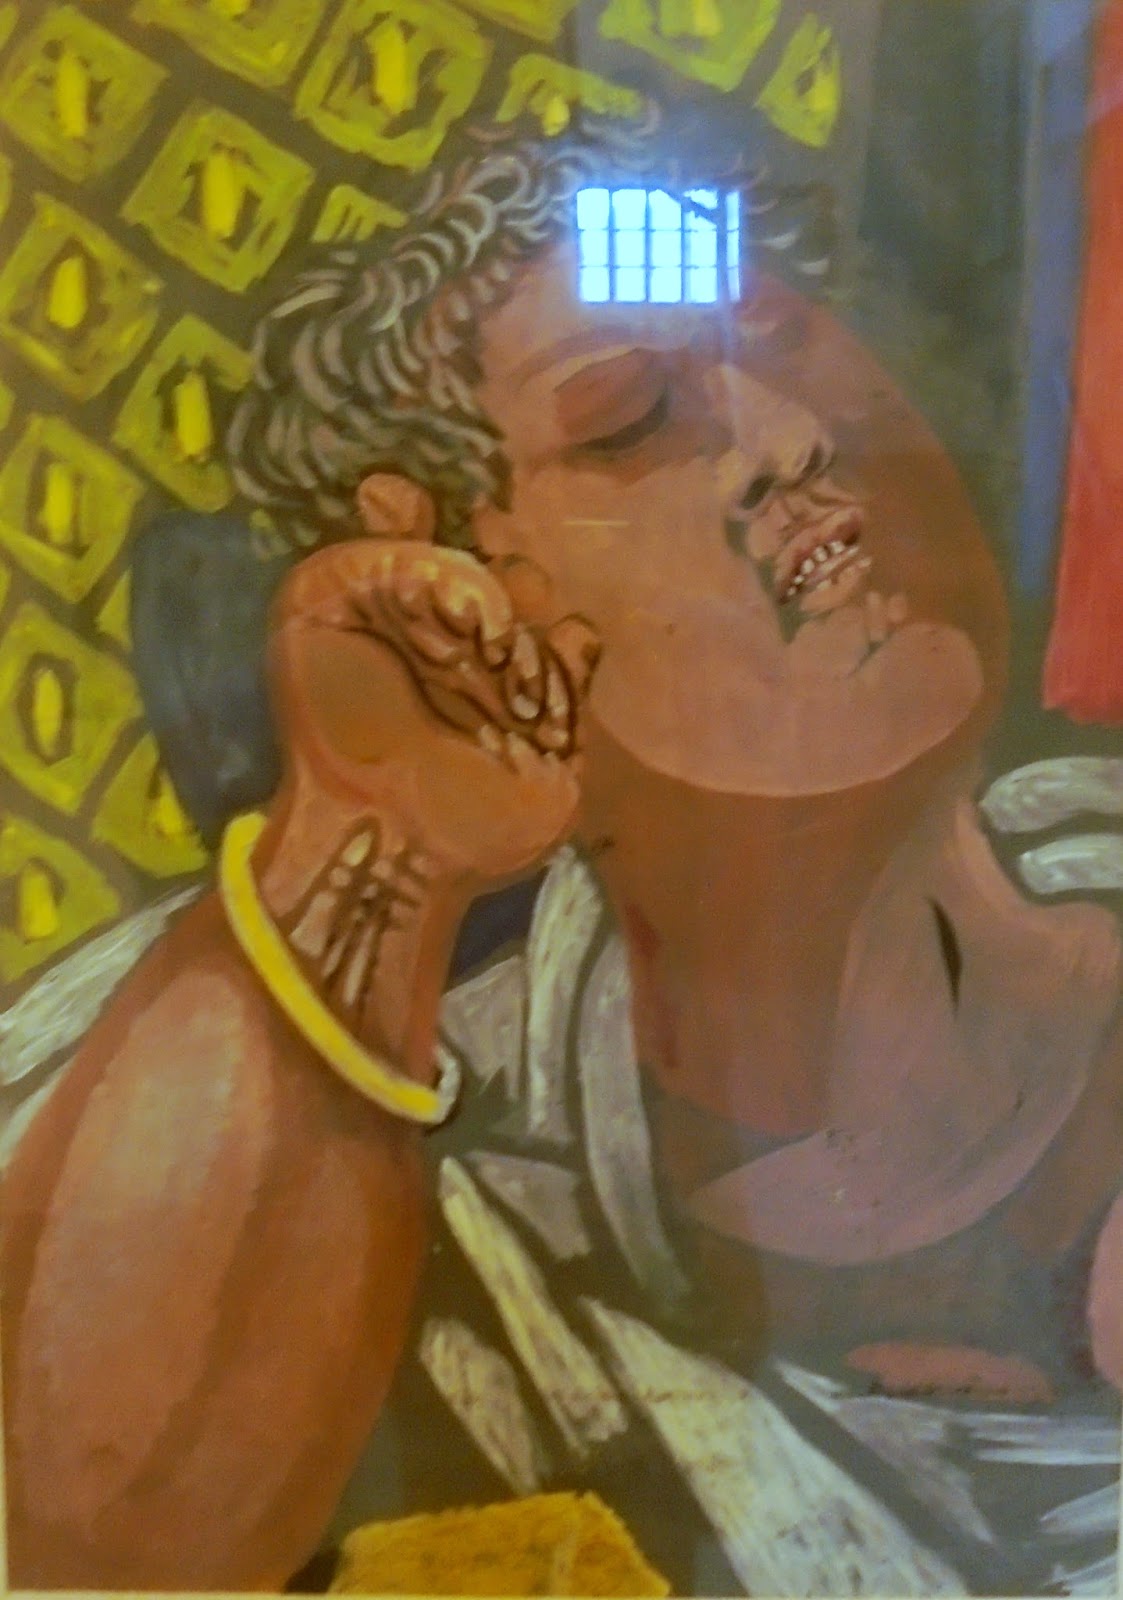 το έργο Αναπαυόμενος Άνδρας του Χατζηκυριάκου - Γκίκα Νικόλαου στη Πινακοθήκη Ευάγγελος Αβέρωφ του Μετσόβου